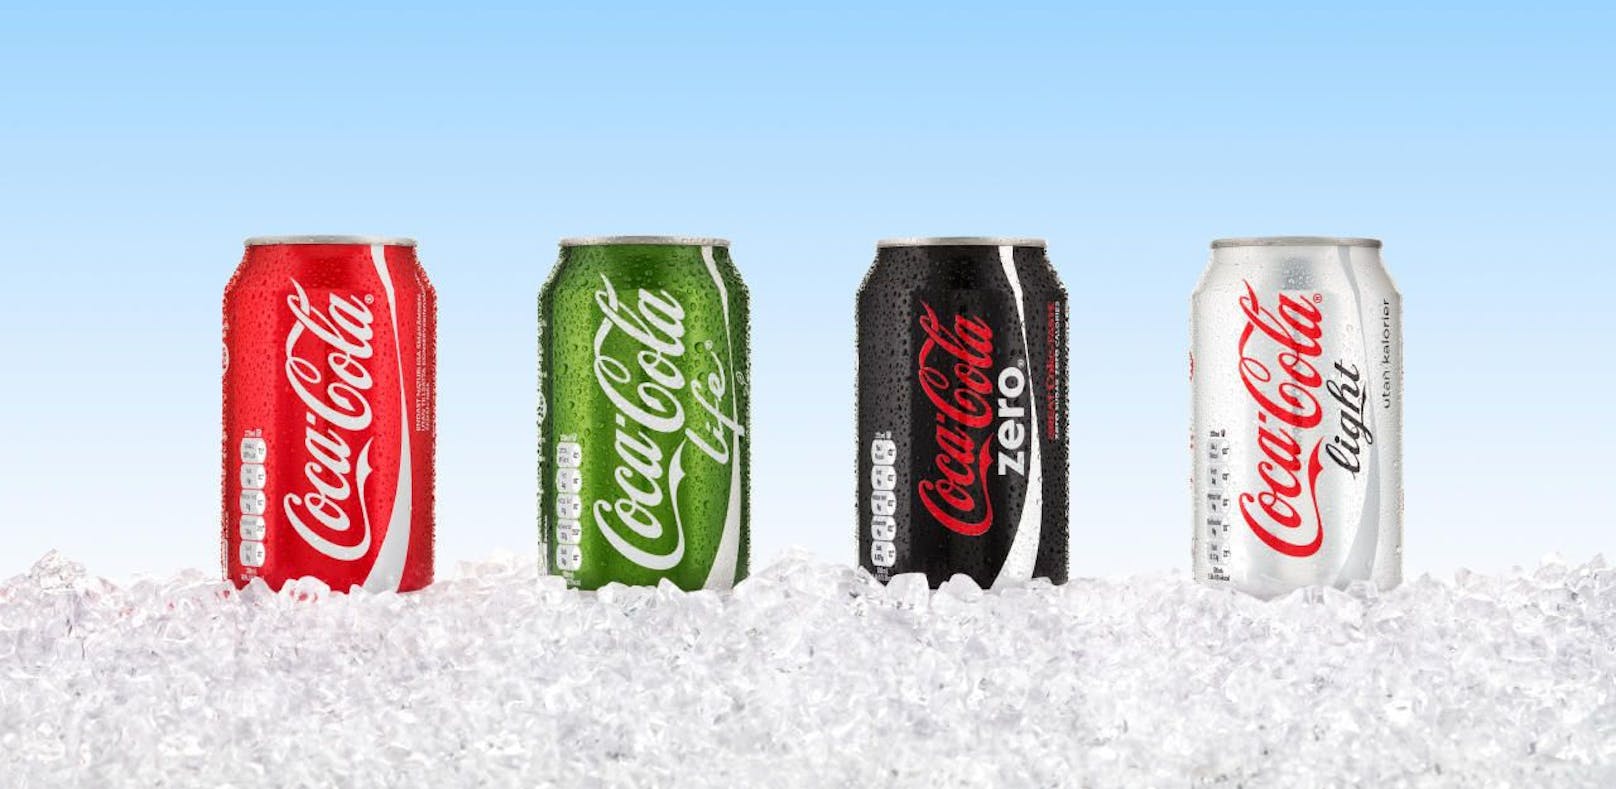 Die vier Cola-Geschmacksrichtungen: Normal, Life, Zero und Light